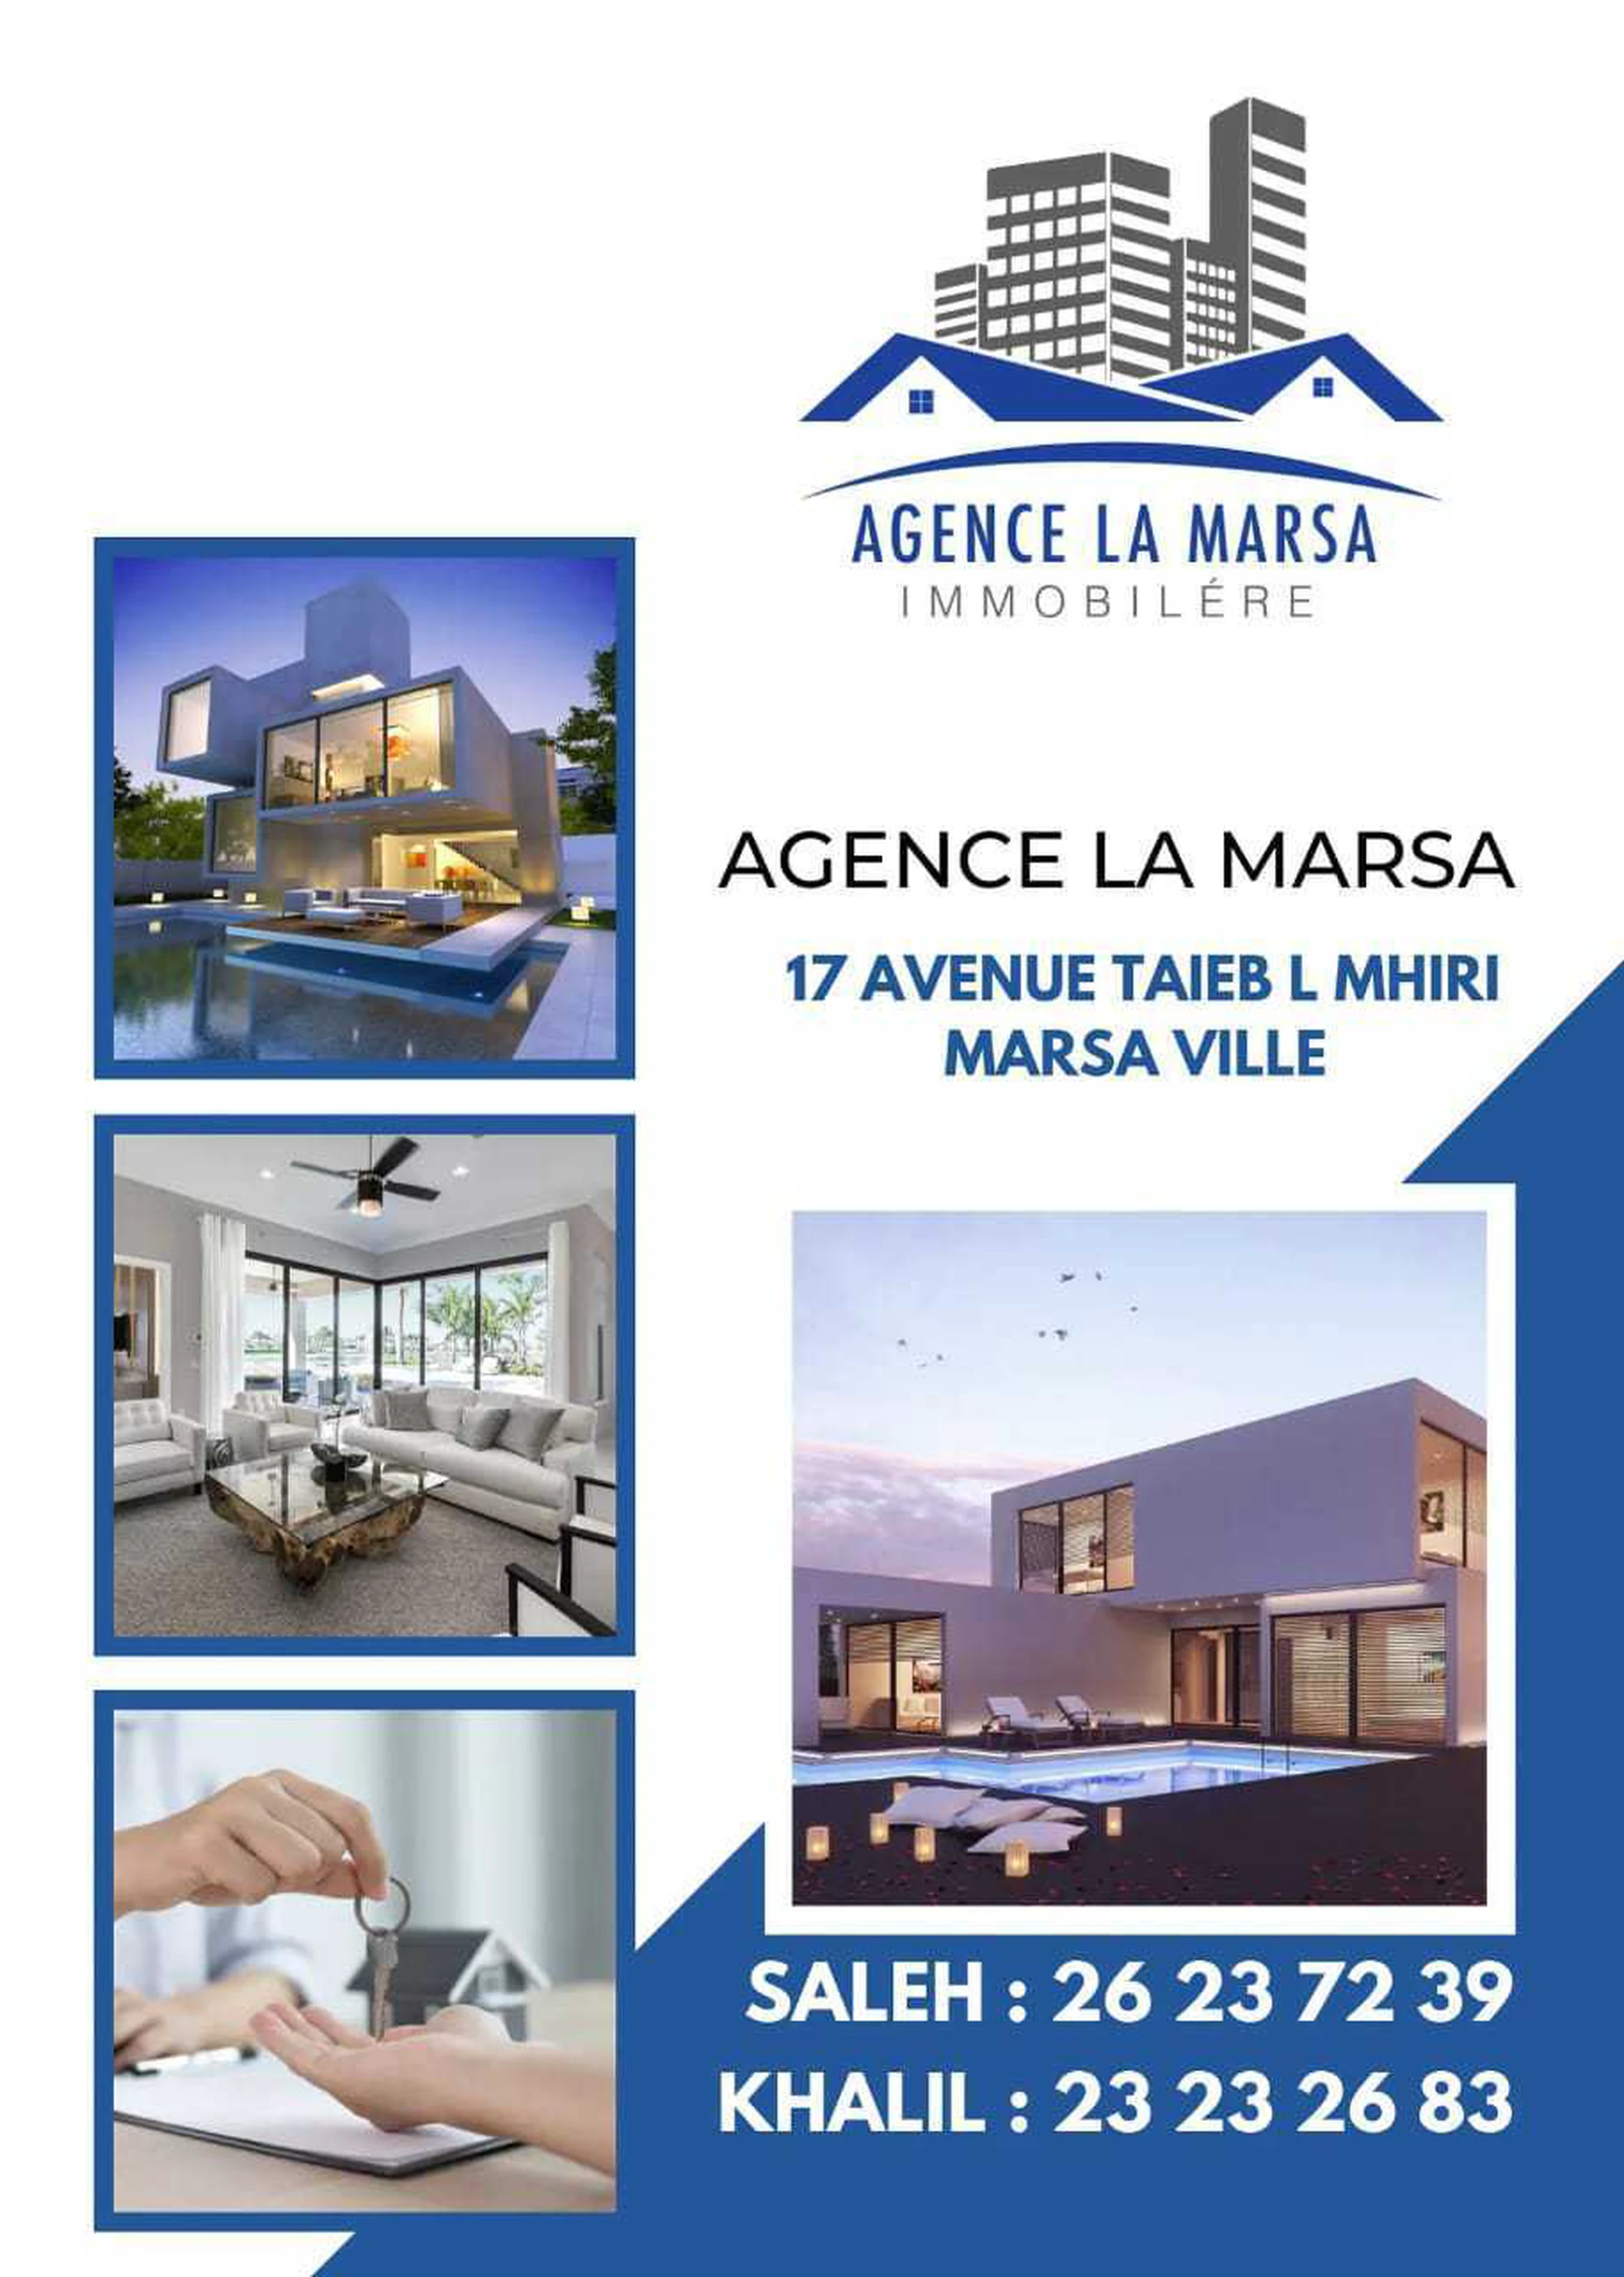 tayara shop cover of AGENCE LA MARSA